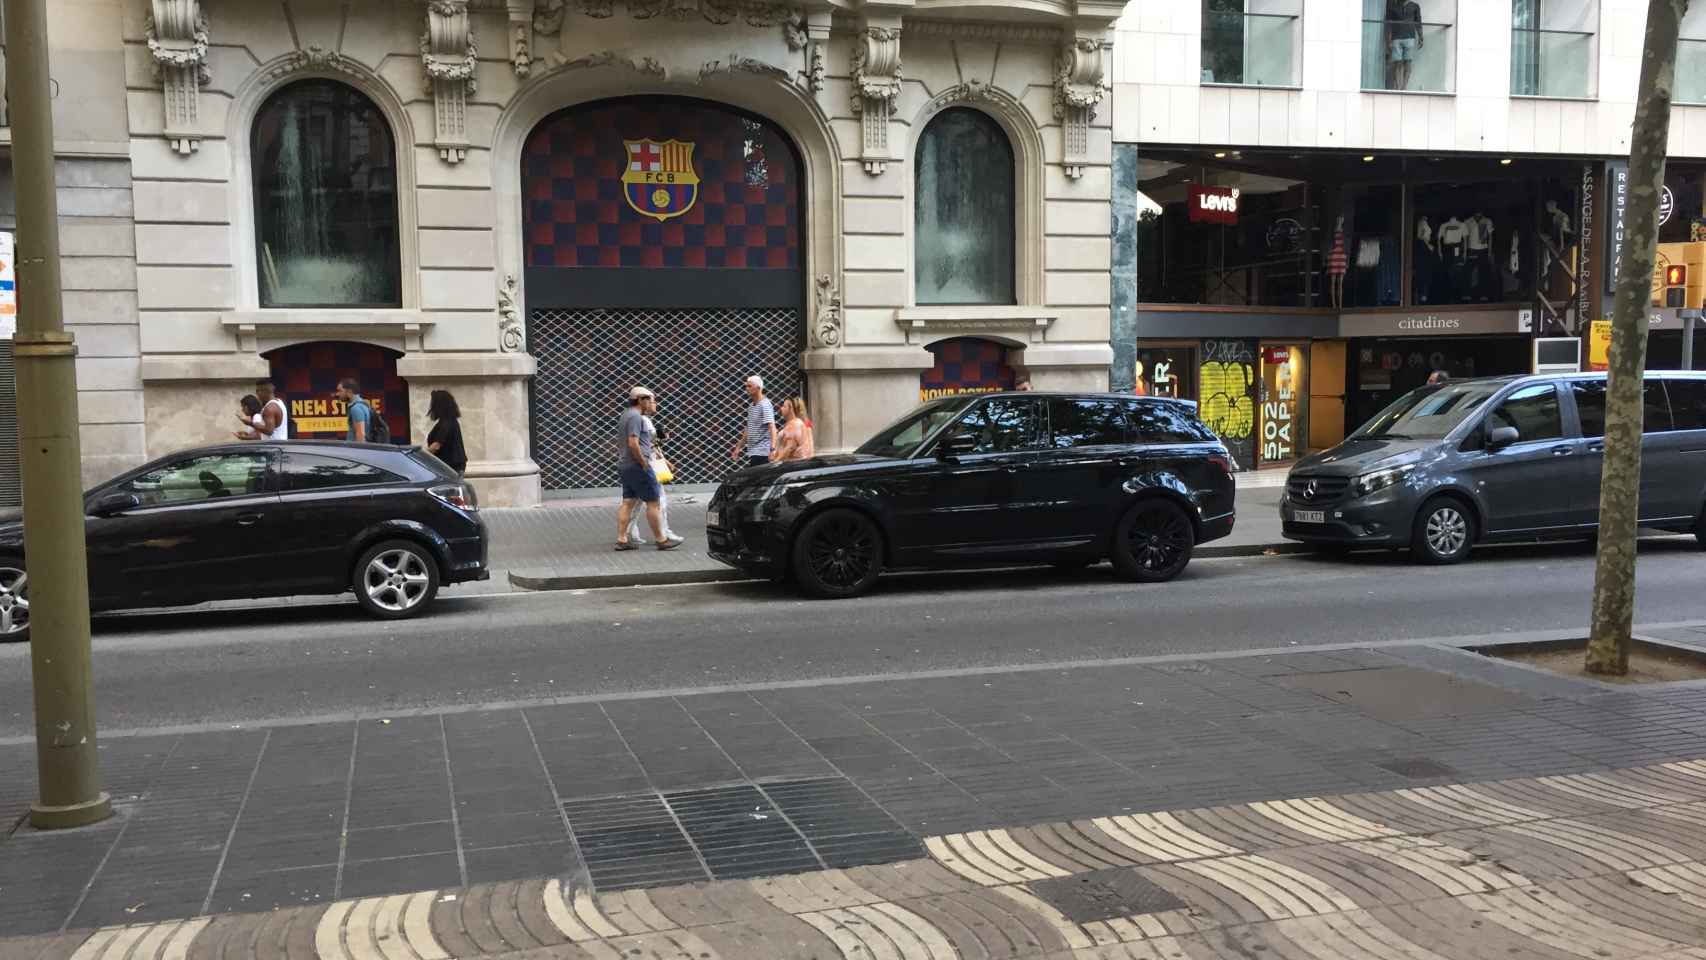 La tienda del Barça, otro delos lugares sin bloquear en el trayecto de subida